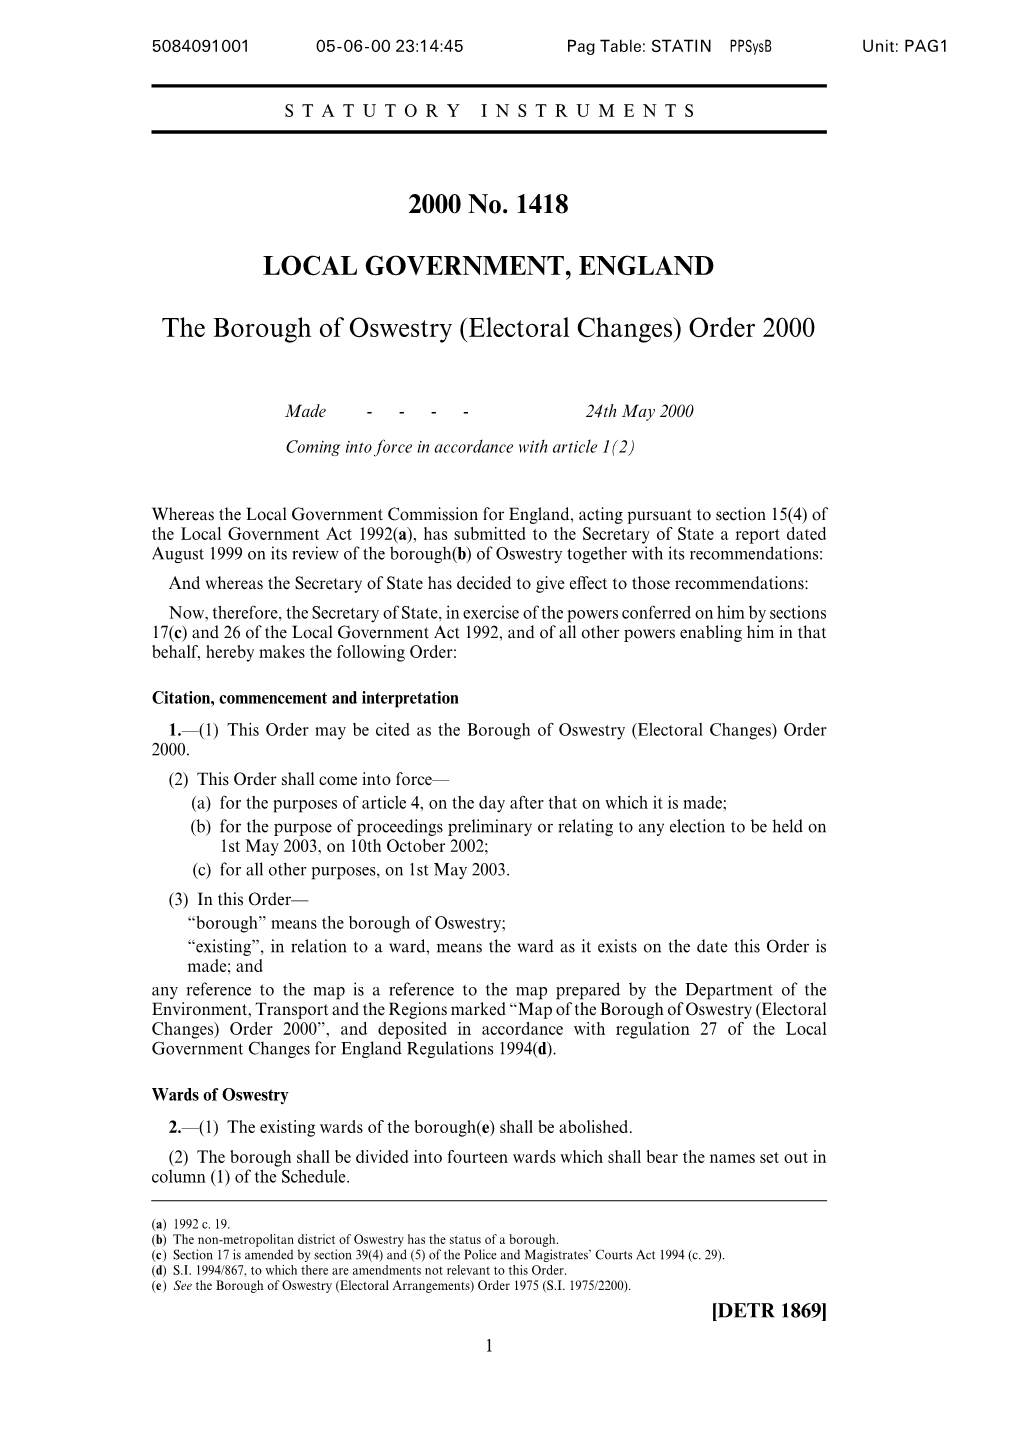 Electoral Changes) Order 2000